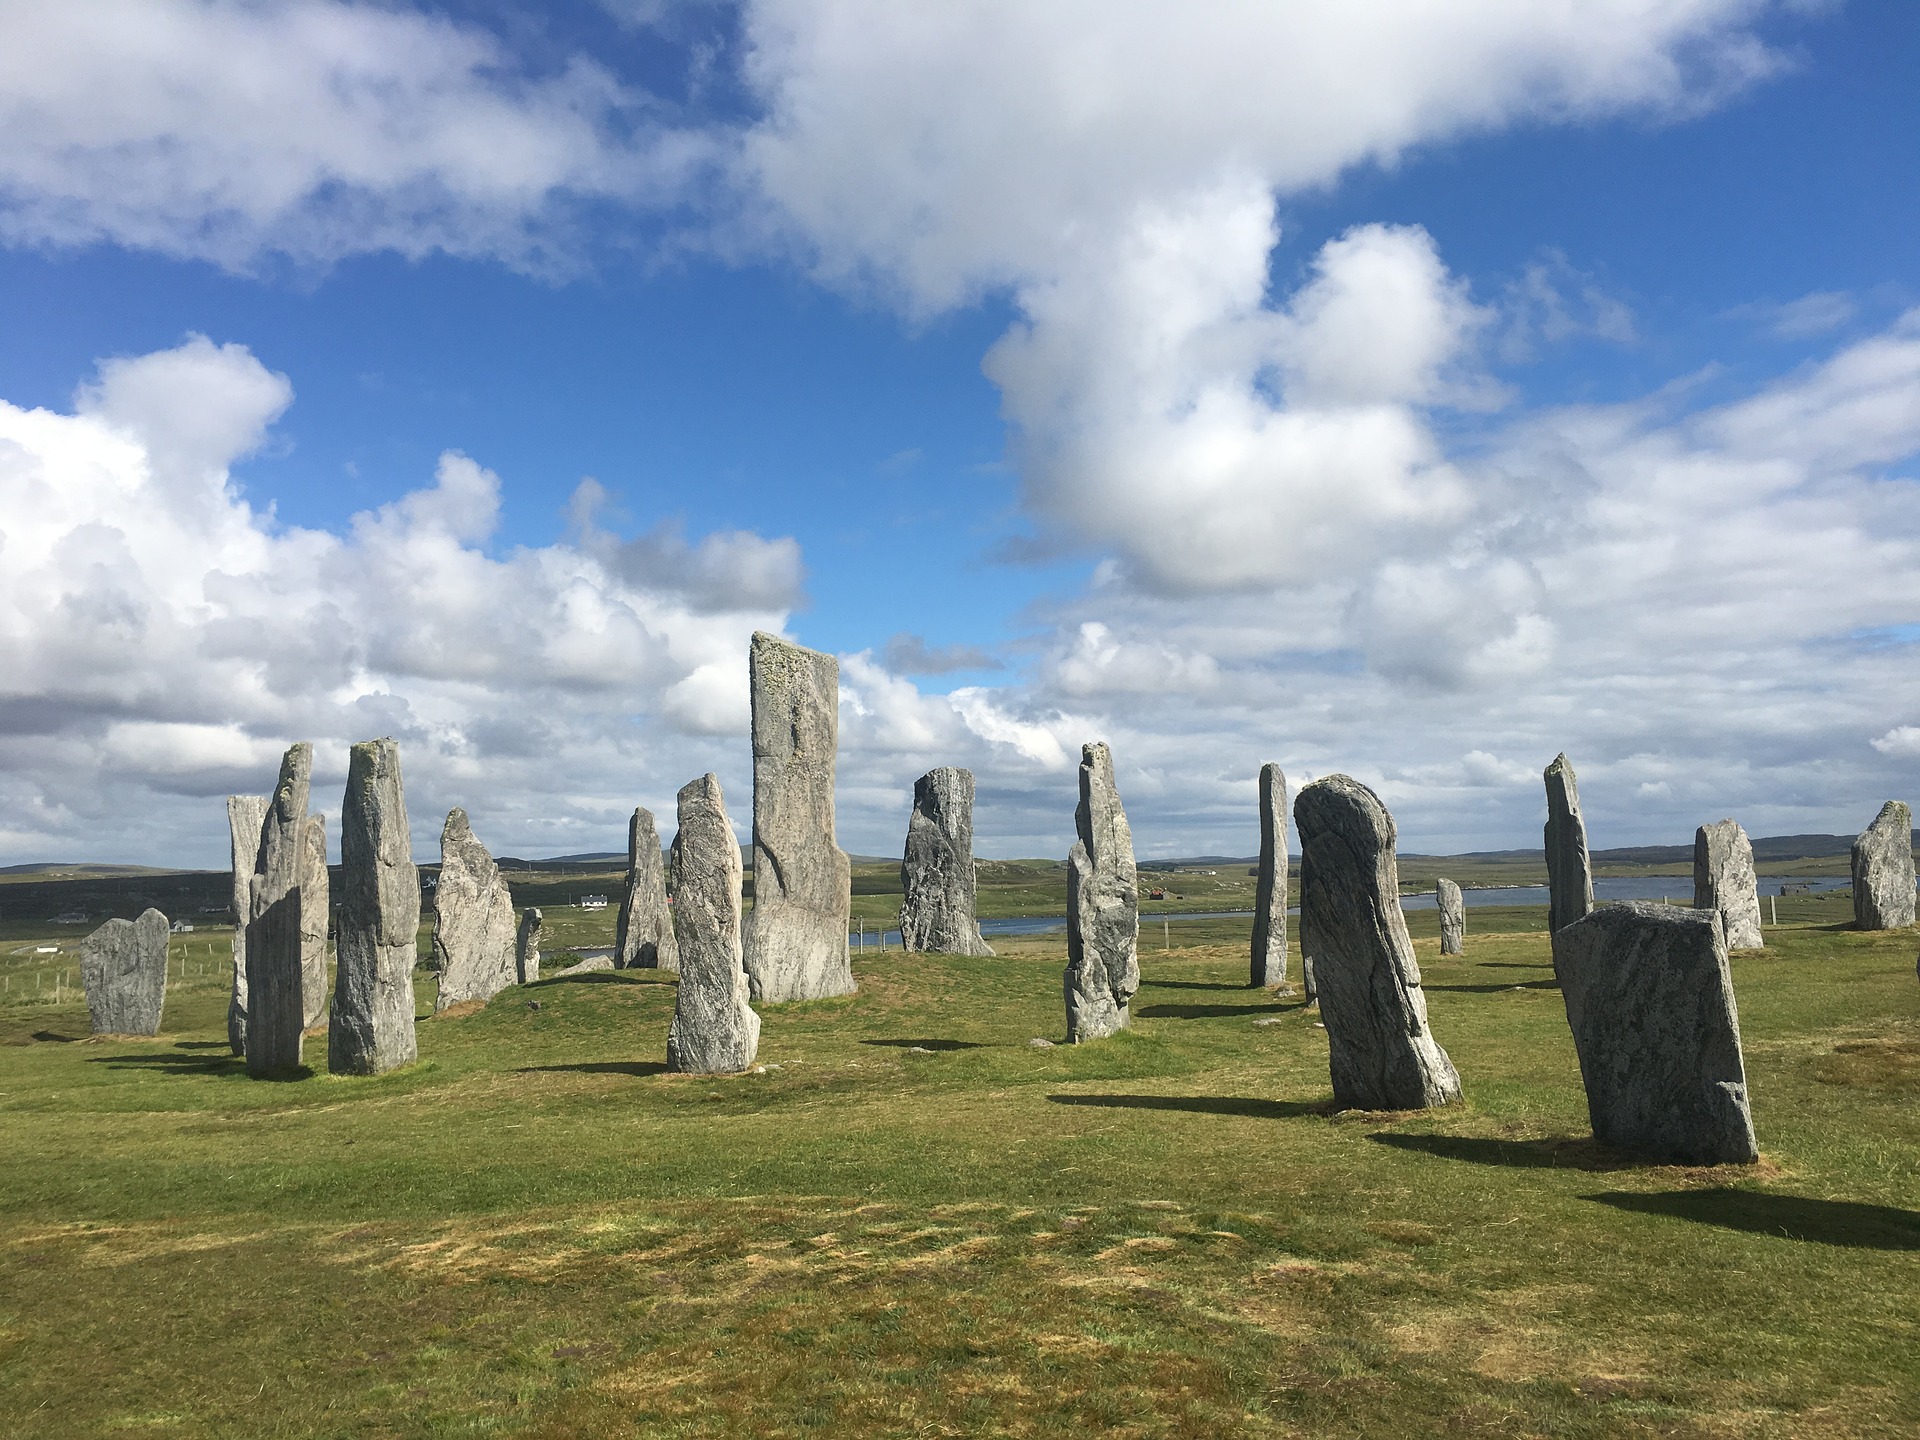 Standing stones. Камни Калланиш остров Льюис Шотландия. Менгиры Калланиша, Шотландия. Стоячие камни Калланиша, Шотландия. Внешние Гебридские острова Шотландии.